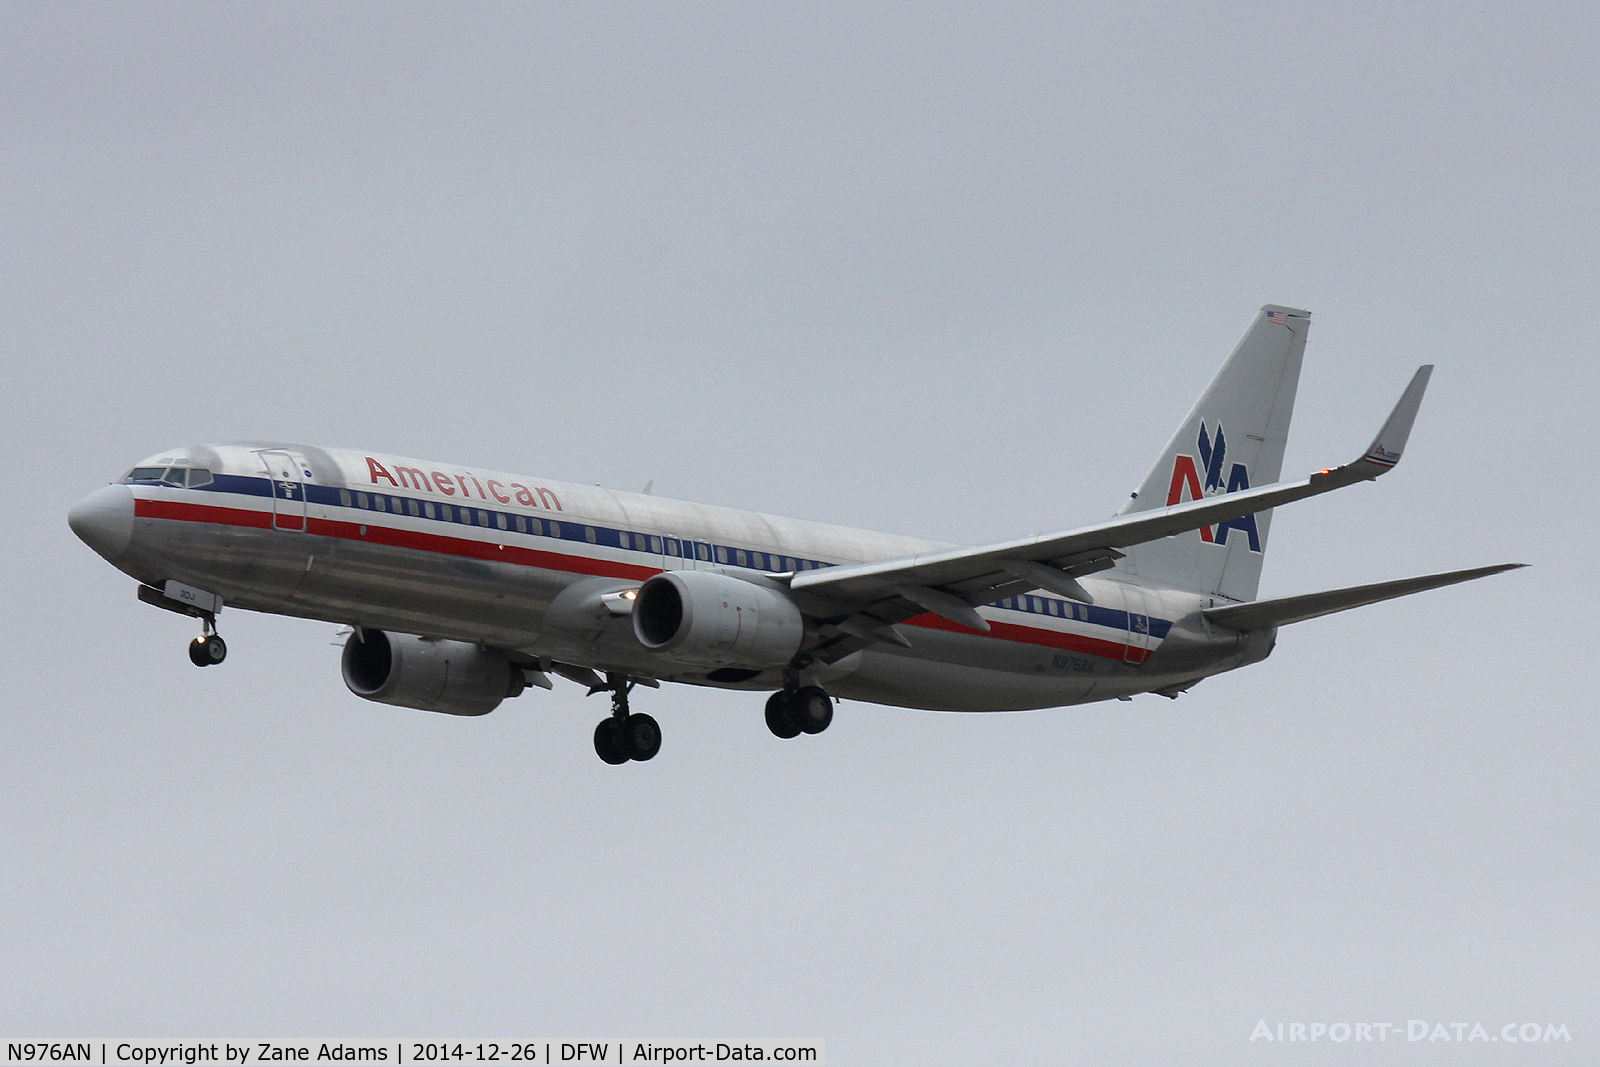 N976AN, 2001 Boeing 737-823 C/N 30099, Landing at DFW Airport